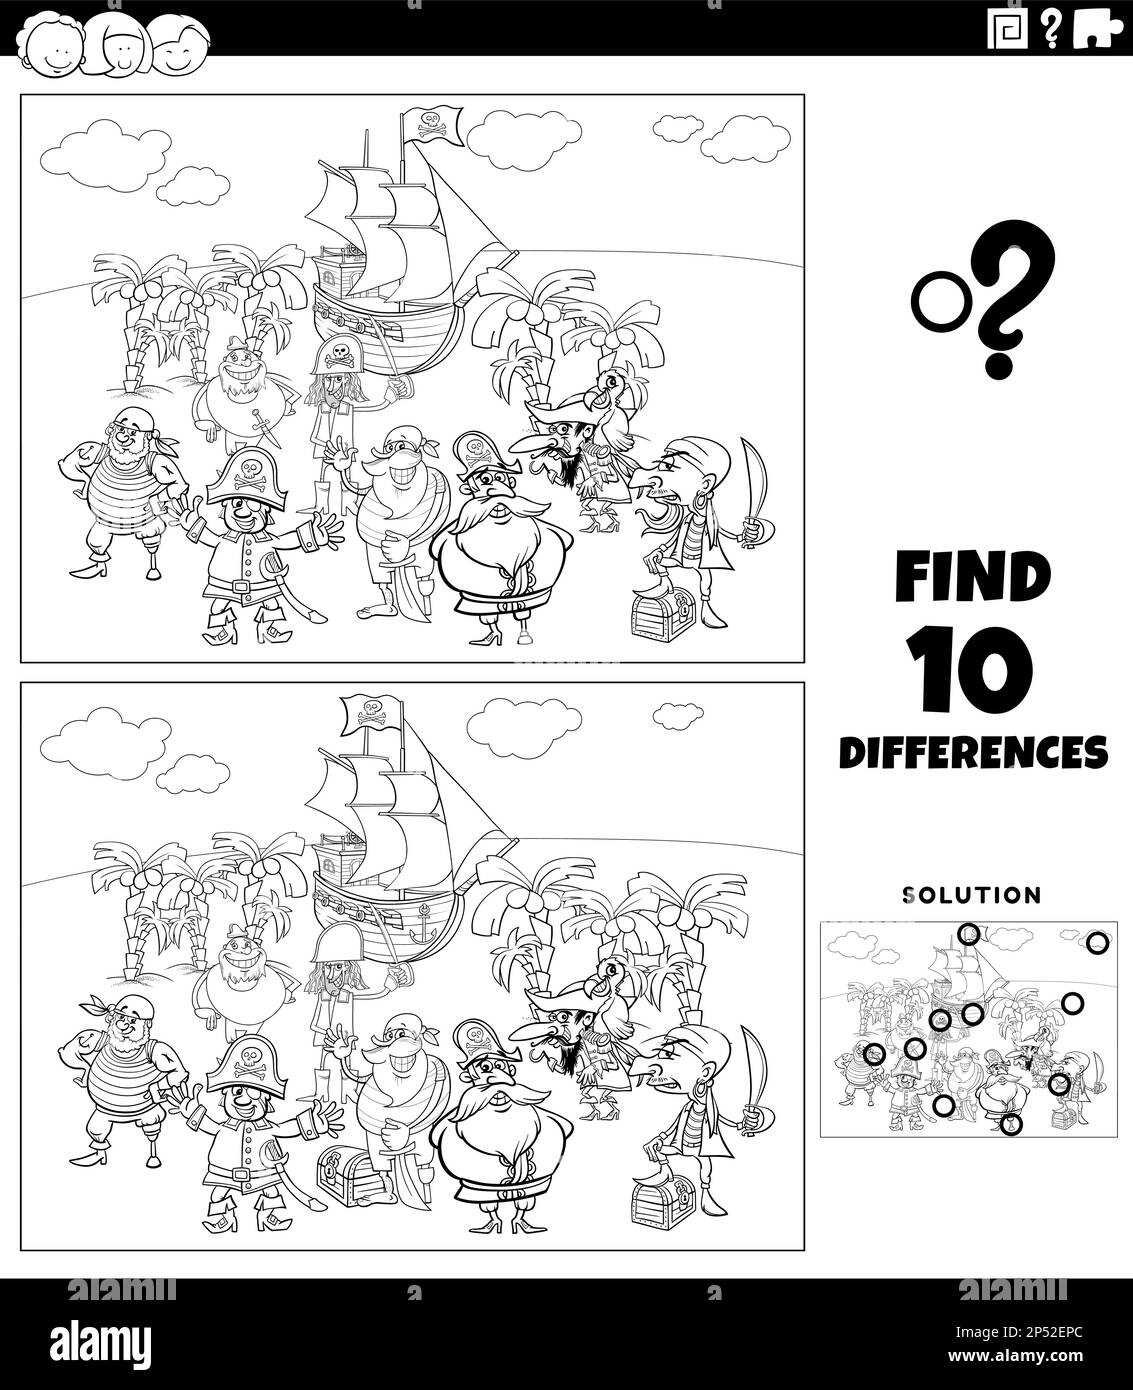 Dessin animé noir et blanc illustration de trouver les différences entre les images jeu éducatif avec les personnages pirates groupe sur Treasure Island col Illustration de Vecteur